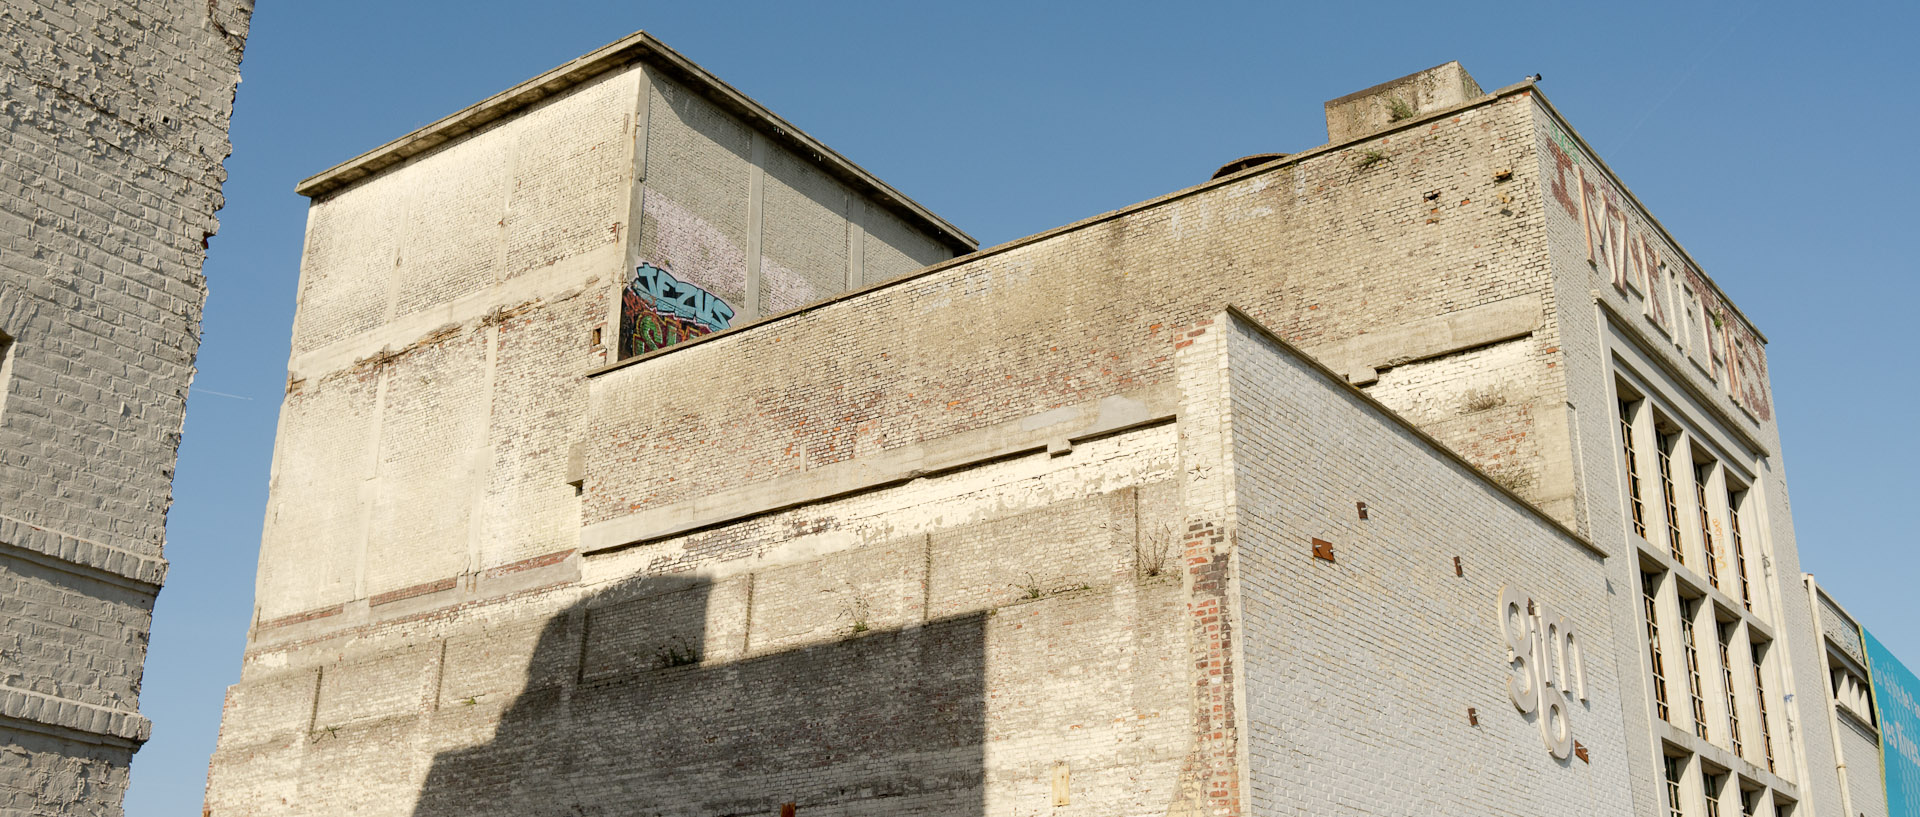 Les ruines de la Grande Brasserie Moderne, Terken, dans la zone de l'Union, à Roubaix.